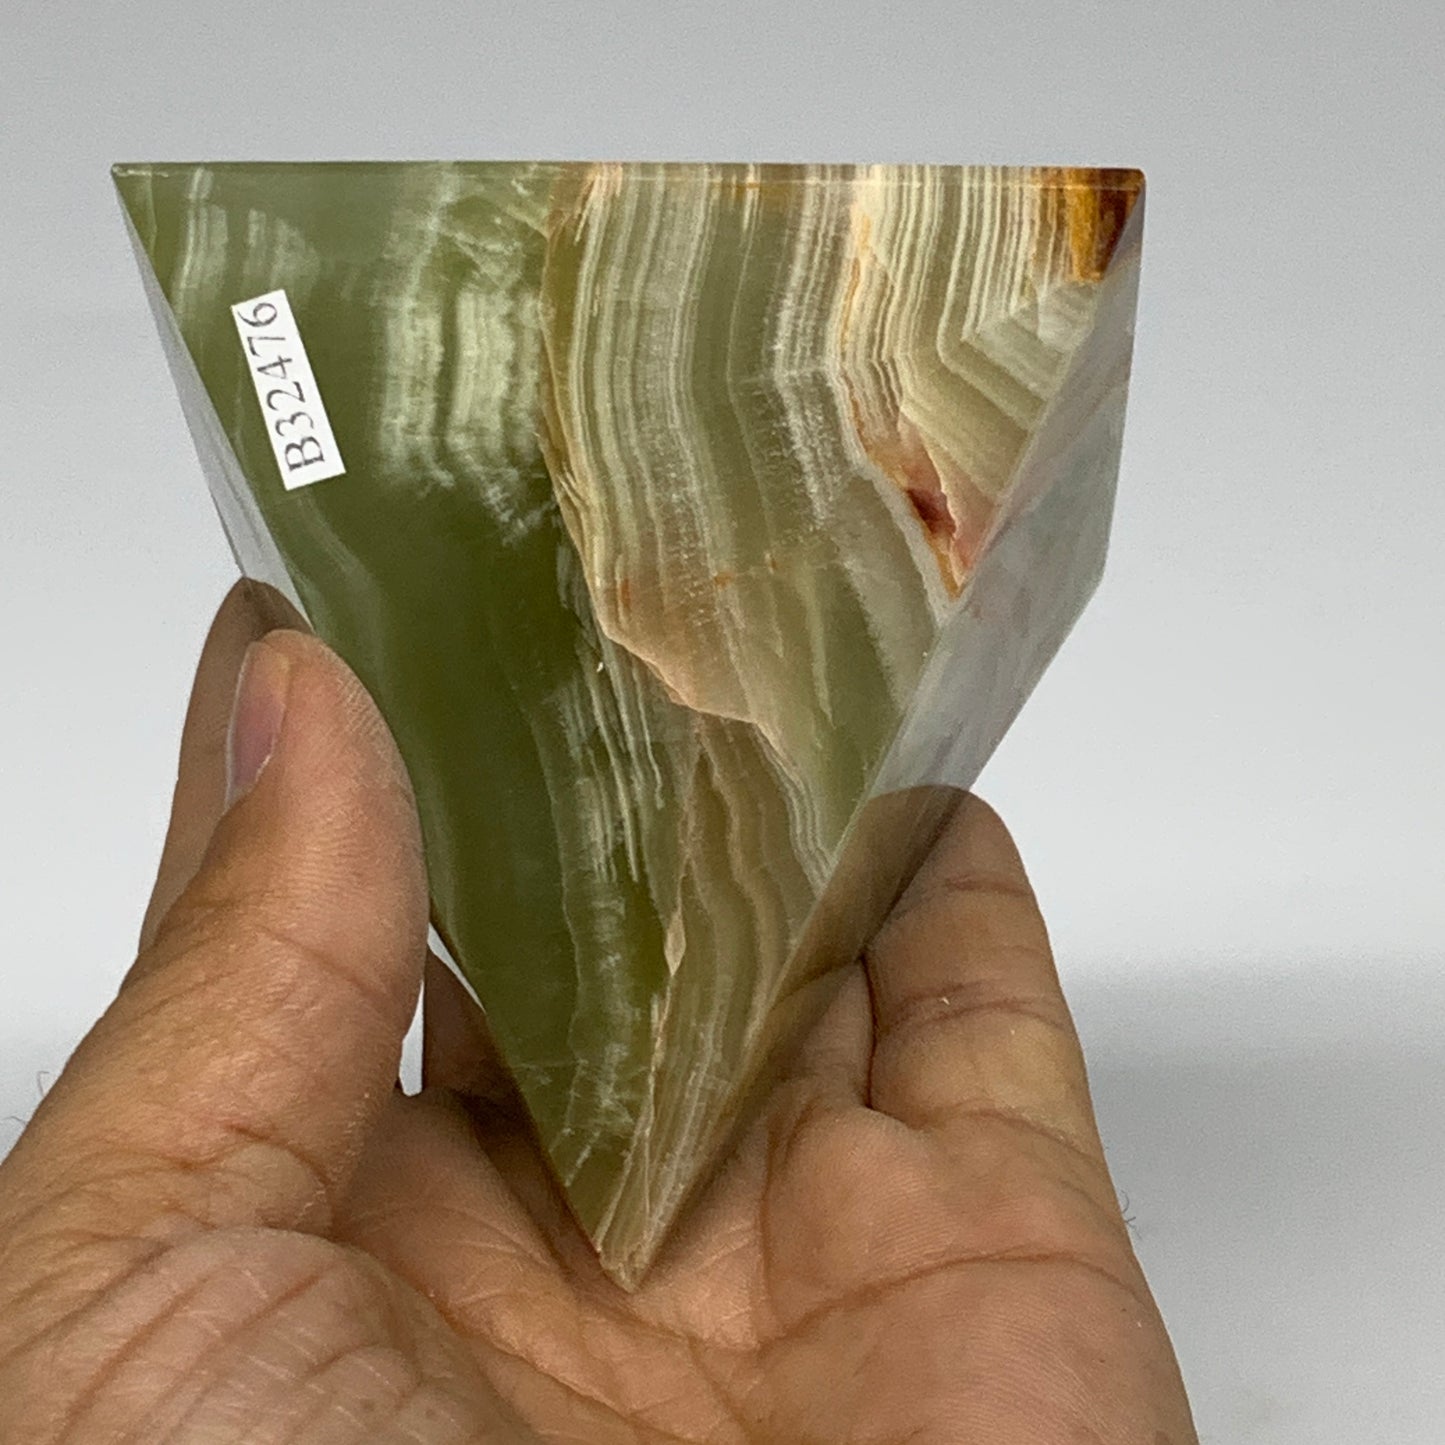 0.82 lbs, 2.8"x2.8"x2.8", Green Onyx Pyramid Gemstone Crystal, B32476